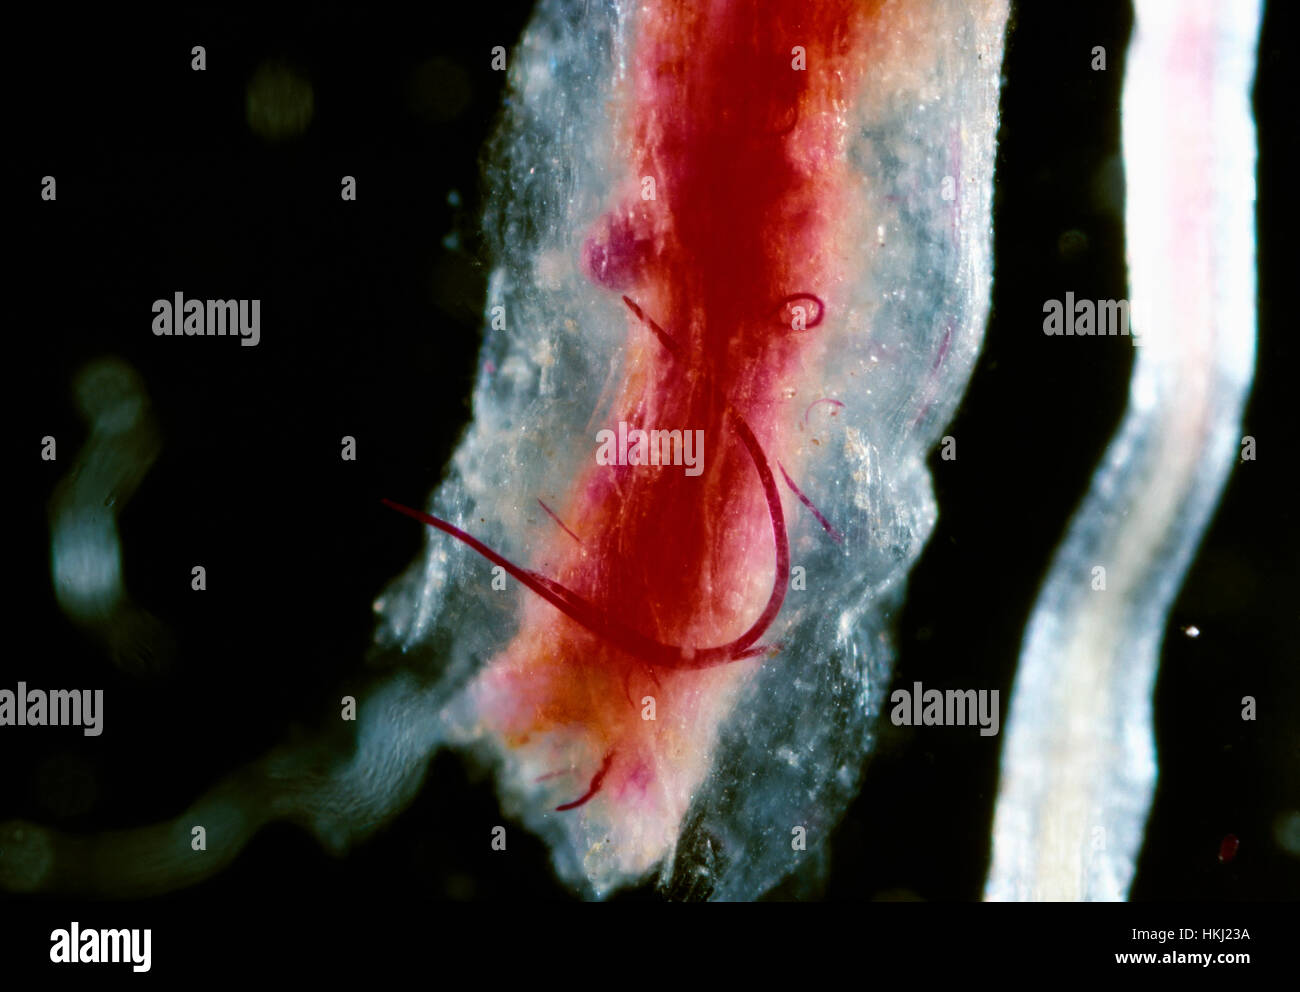 Agricultura - Rootknot nematodos (Meloidogyne incognita), macho maduro visibles en una raíz de algodón teñido de color rojo (largas y delgadas hacia atrás Foto de stock